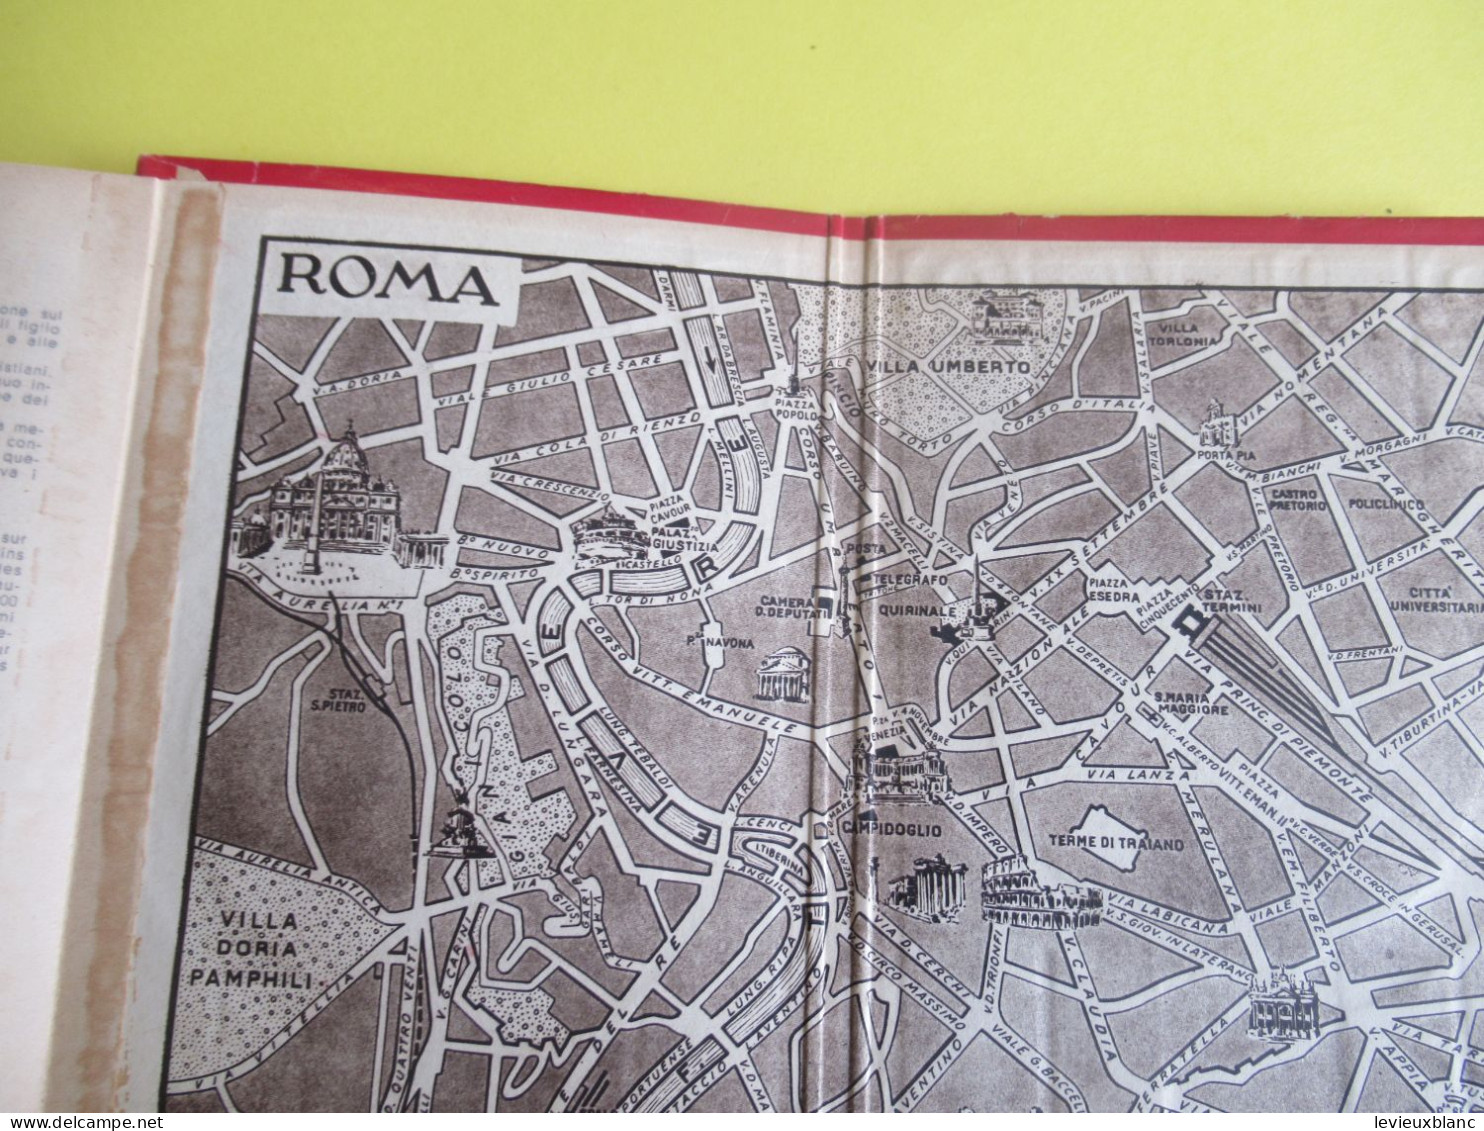 Ricordo di ROMA/Parte II /Livret souvenir de Rome/avec 32 vues photographiques Héliogravures/ Vers1910-1920     PGC544